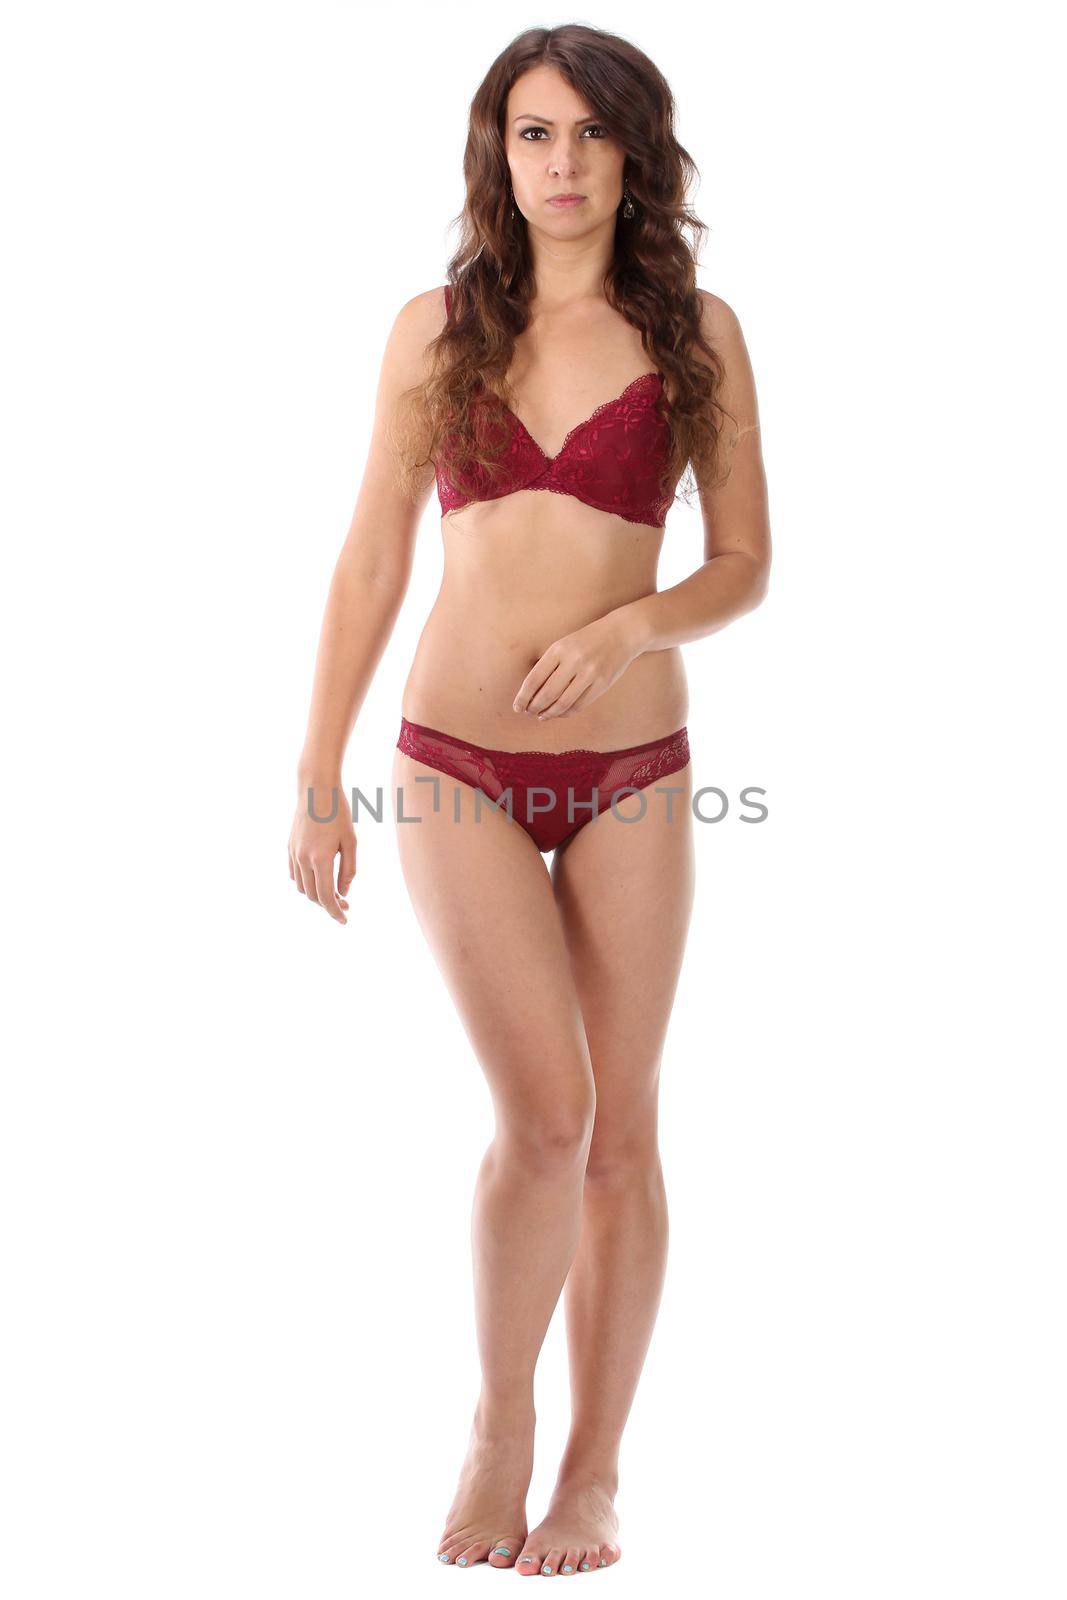 Beautiful full body brunette beauty woman in sexy underwear by gsdonlin